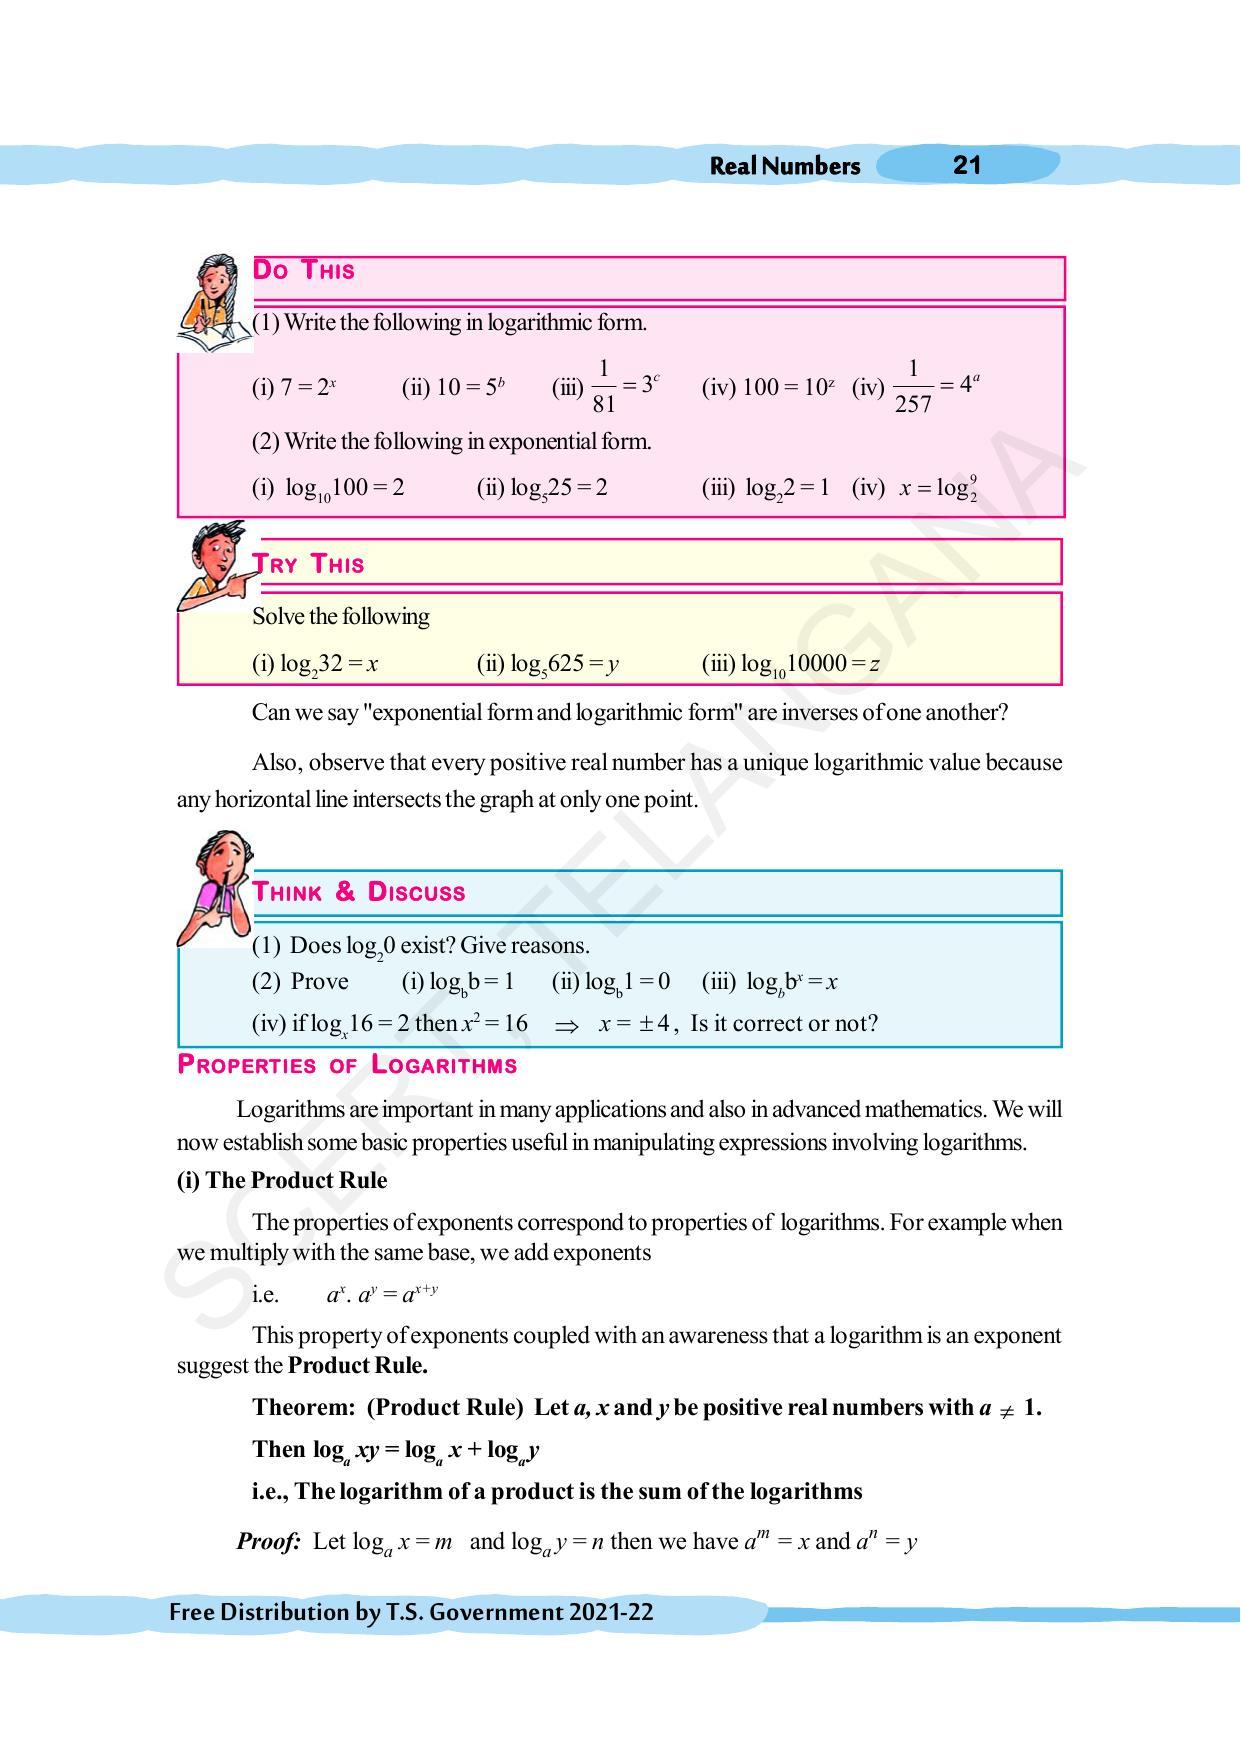 TS SCERT Class 10 Maths (English Medium) Text Book - Page 31